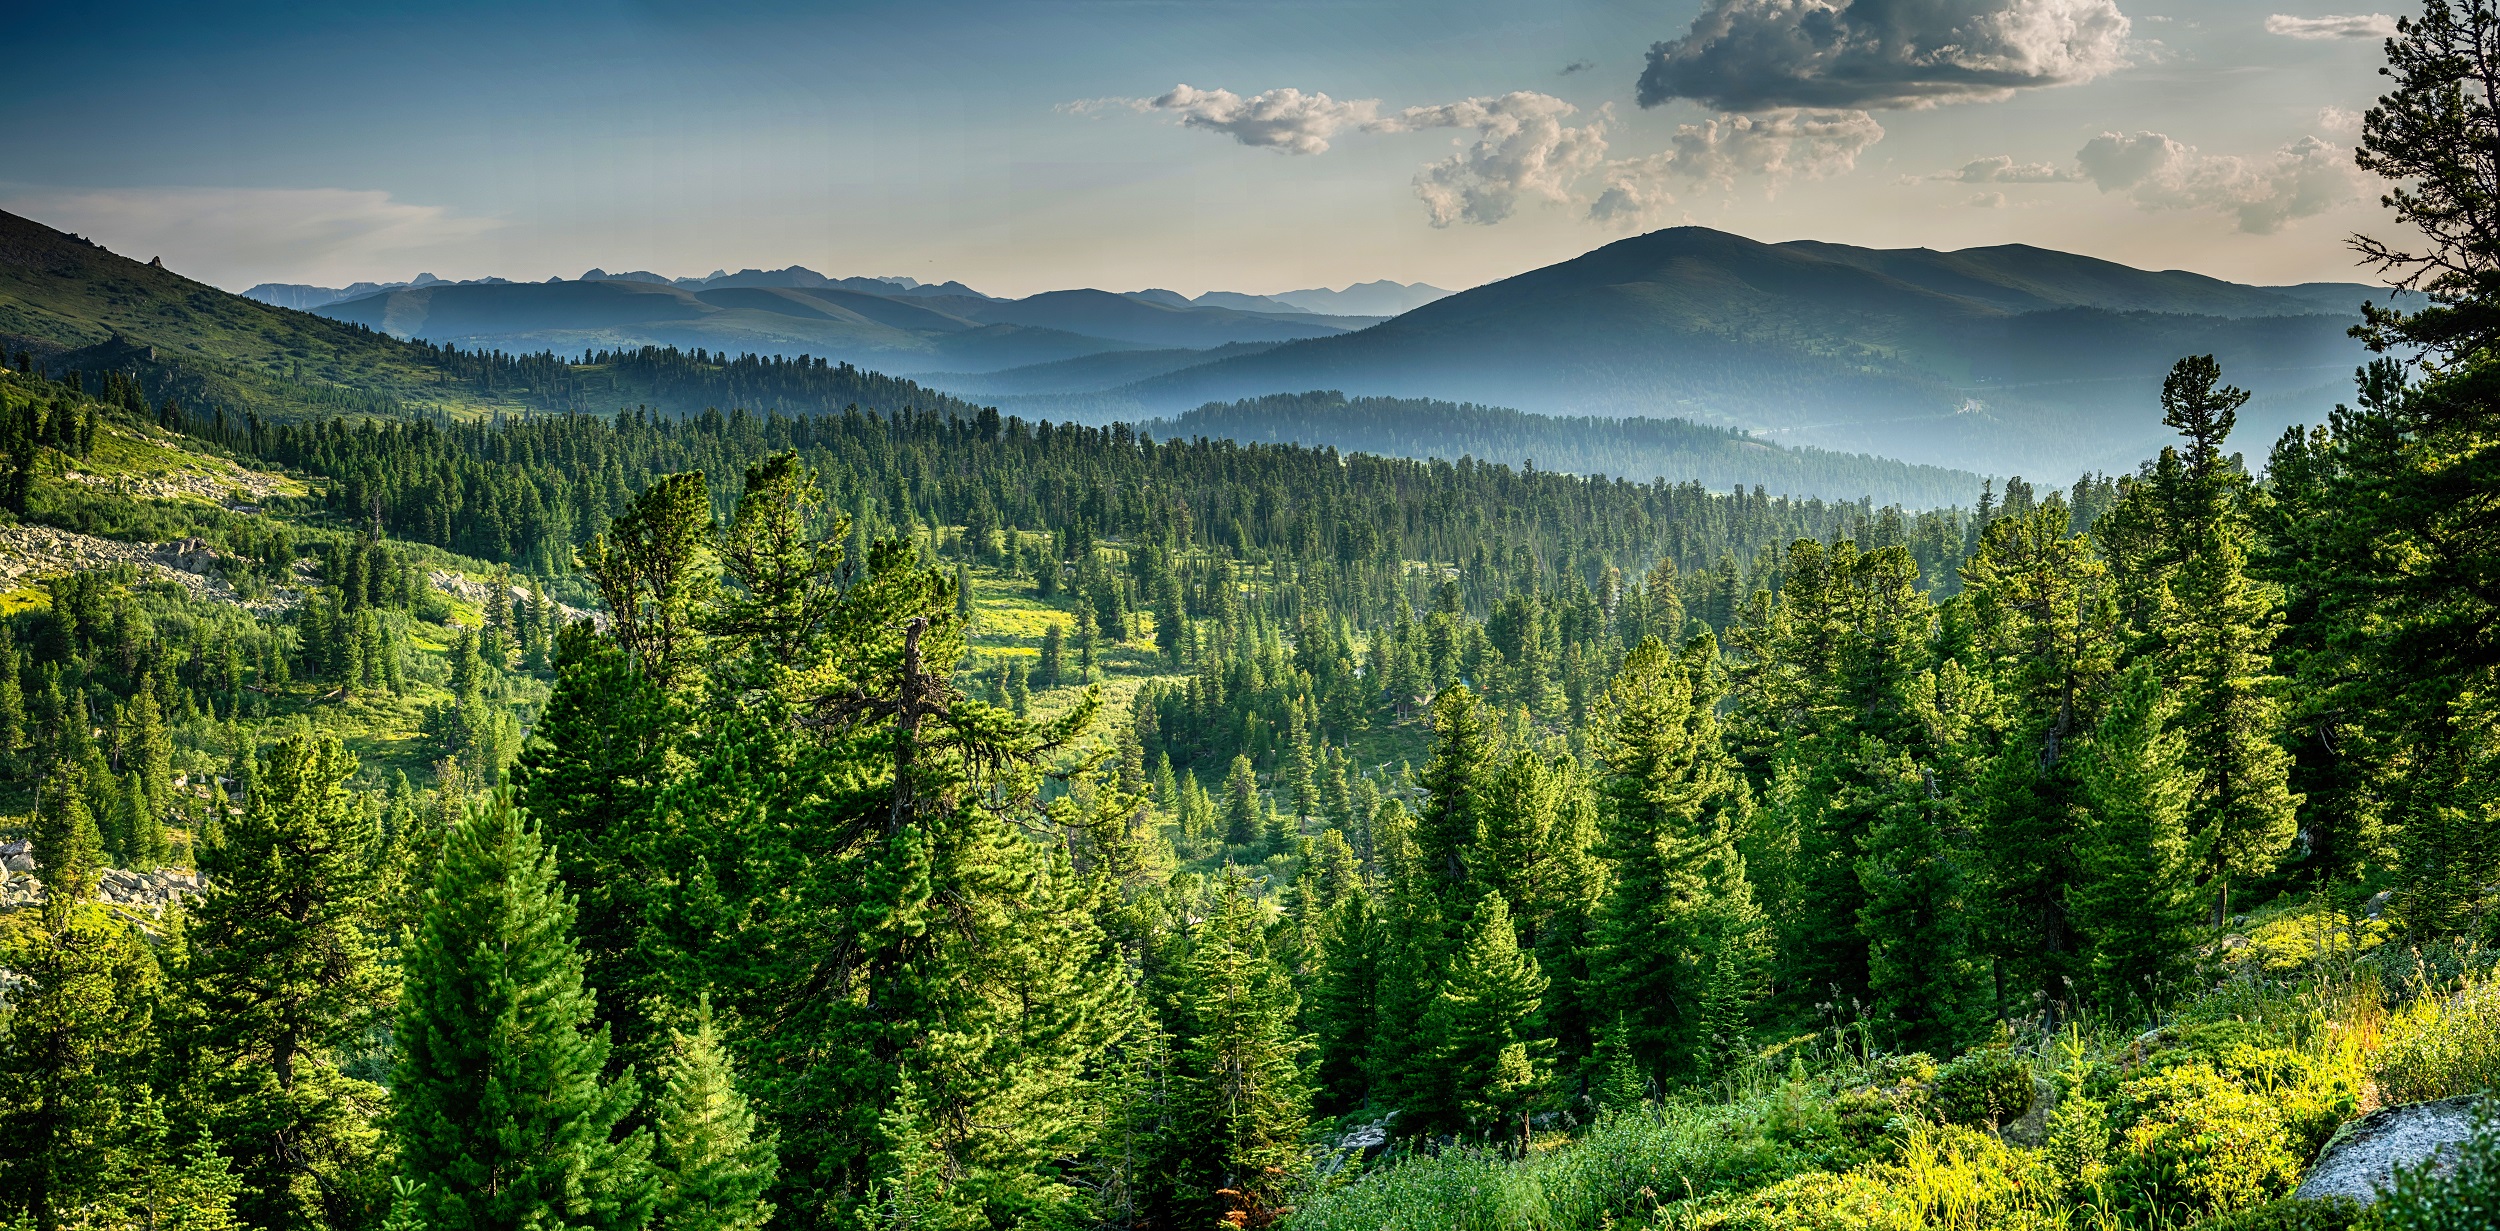 La reforestation de l'est des Etats-Unis a permis de réduire la hausse des températures. © VarnakovR, Adobe Stock